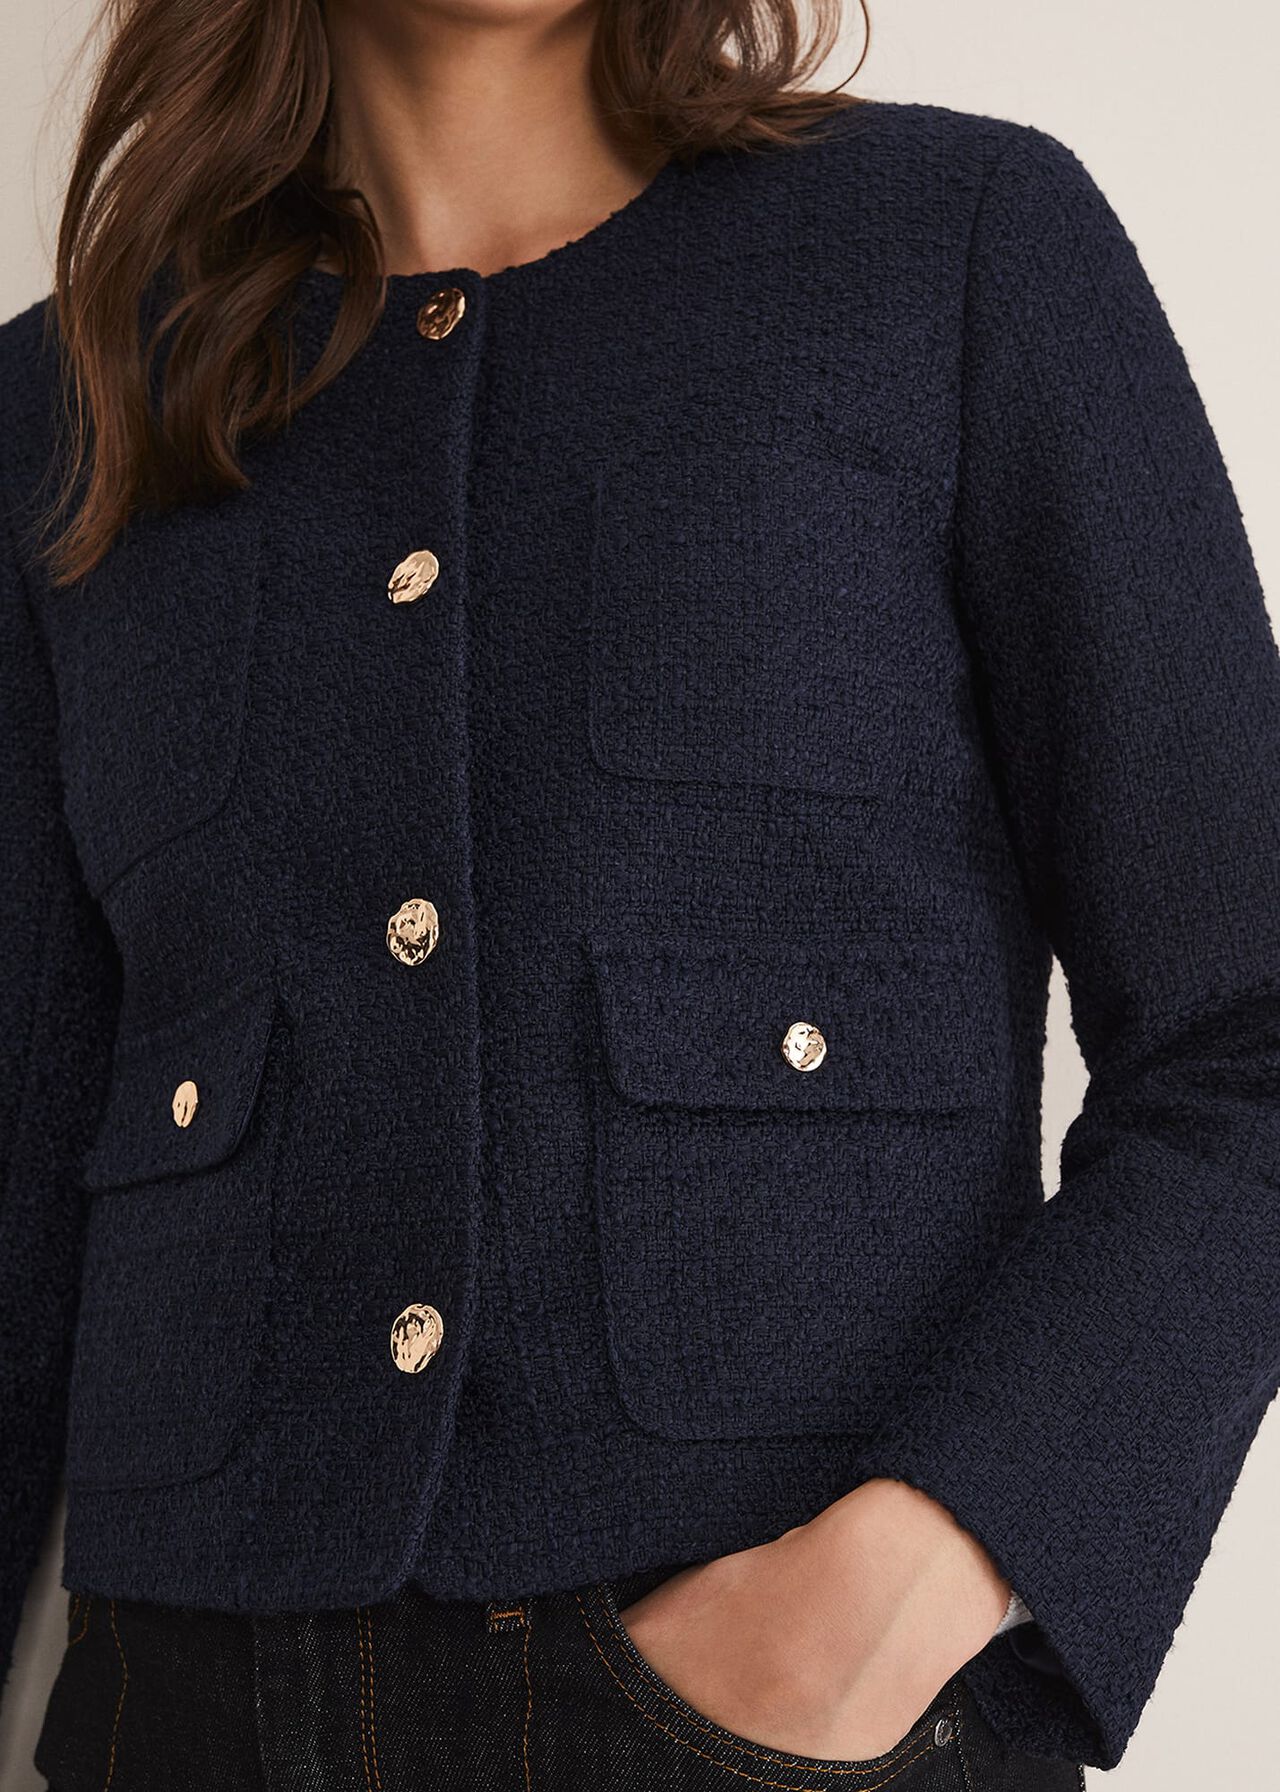 Ripley Tweed Jacket